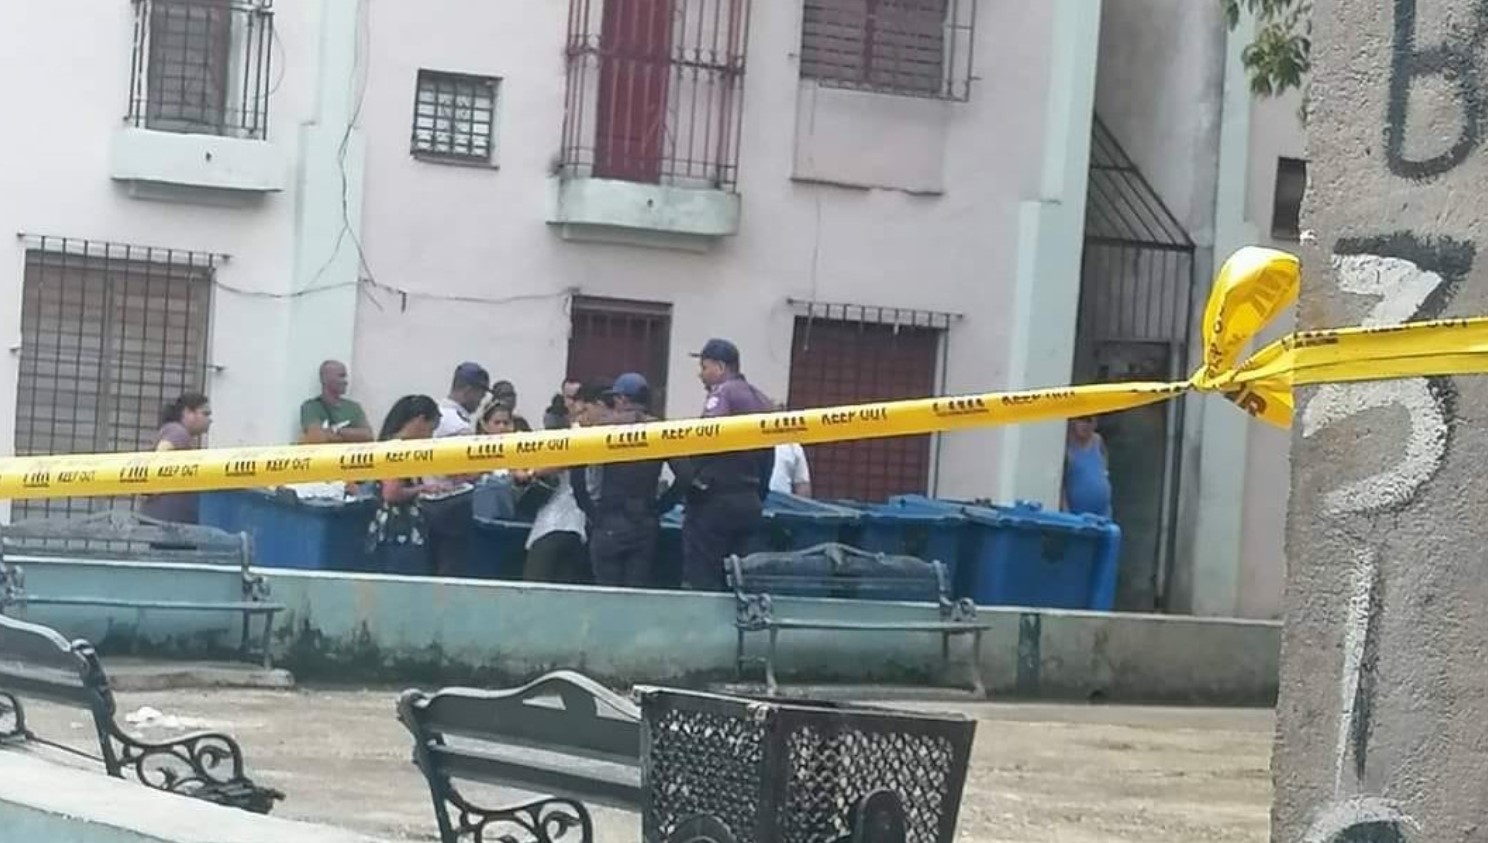 “¿Qué nos está pasando como sociedad?”: un macabro hallazgo en un basurero sacude La Habana